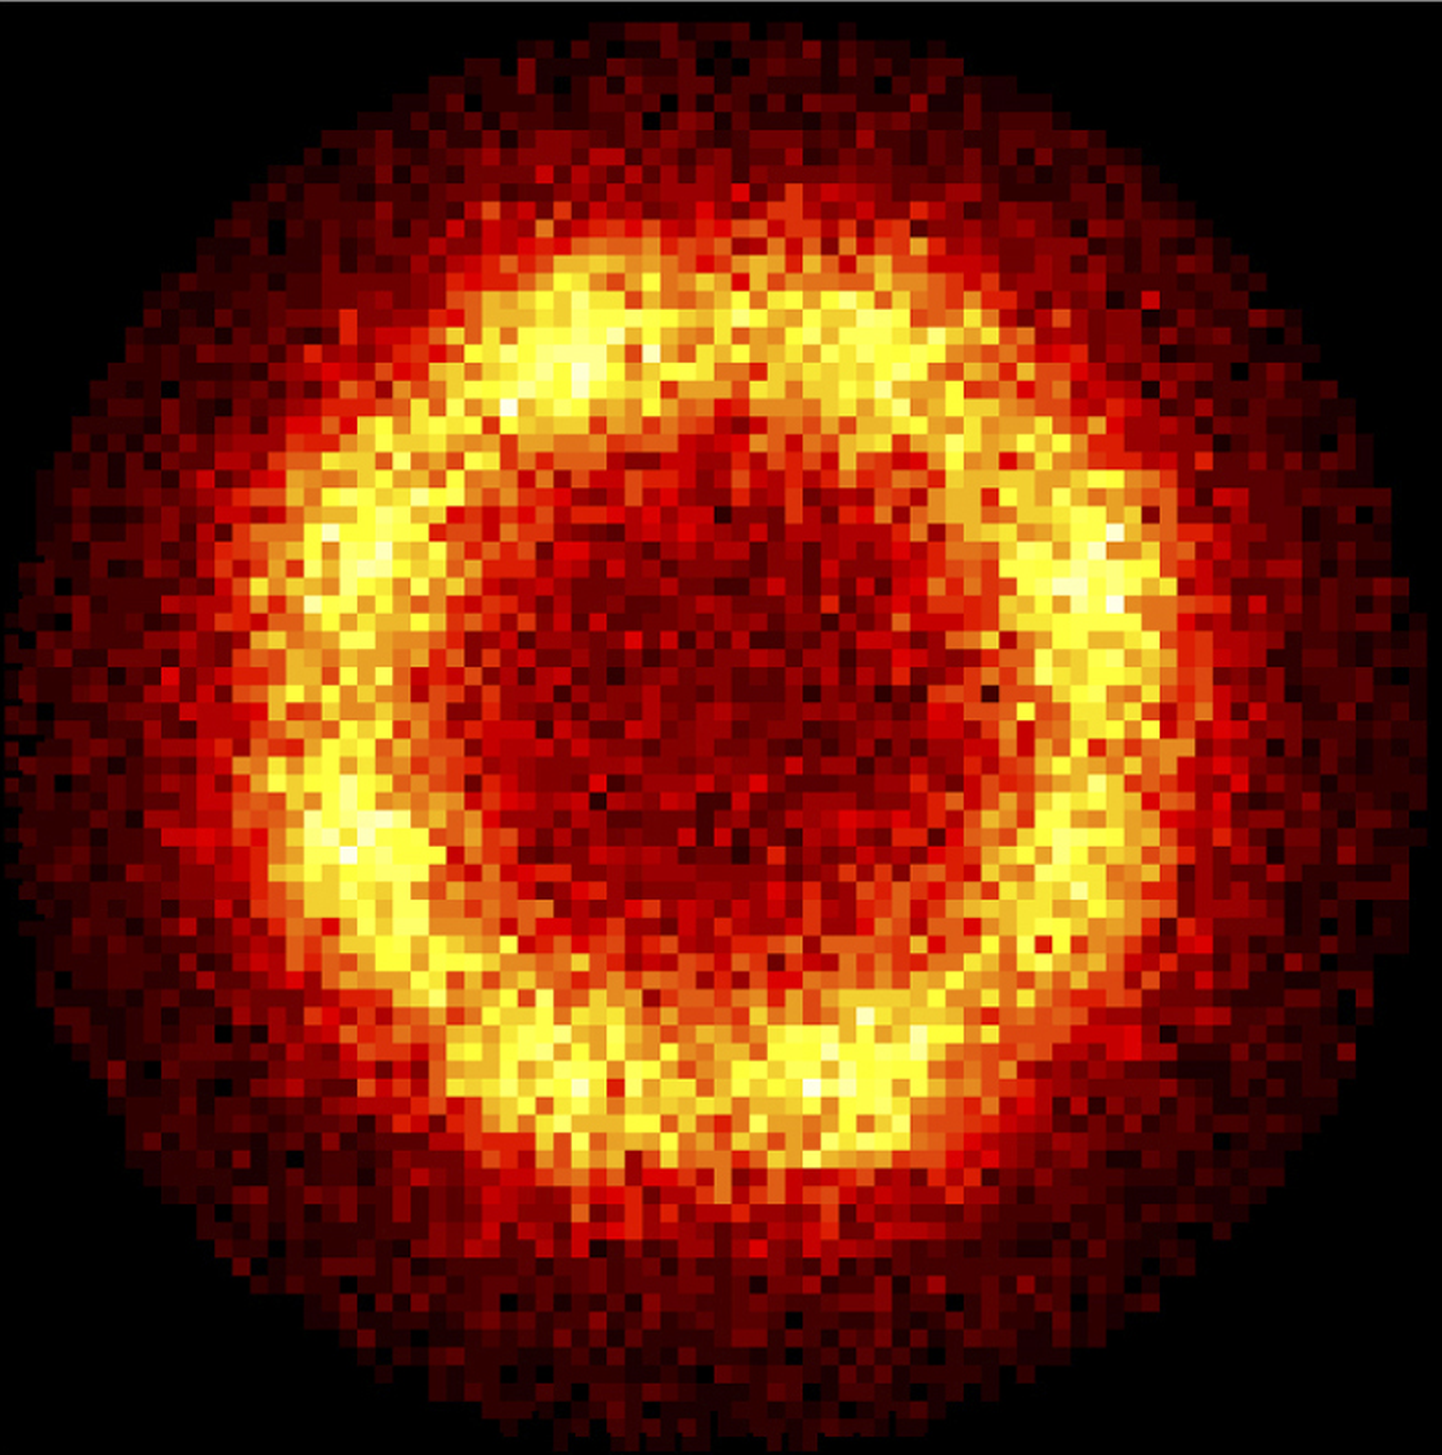 CERNi pilt, mis näitab suurendatud kujul antivesiniku aatomeid.